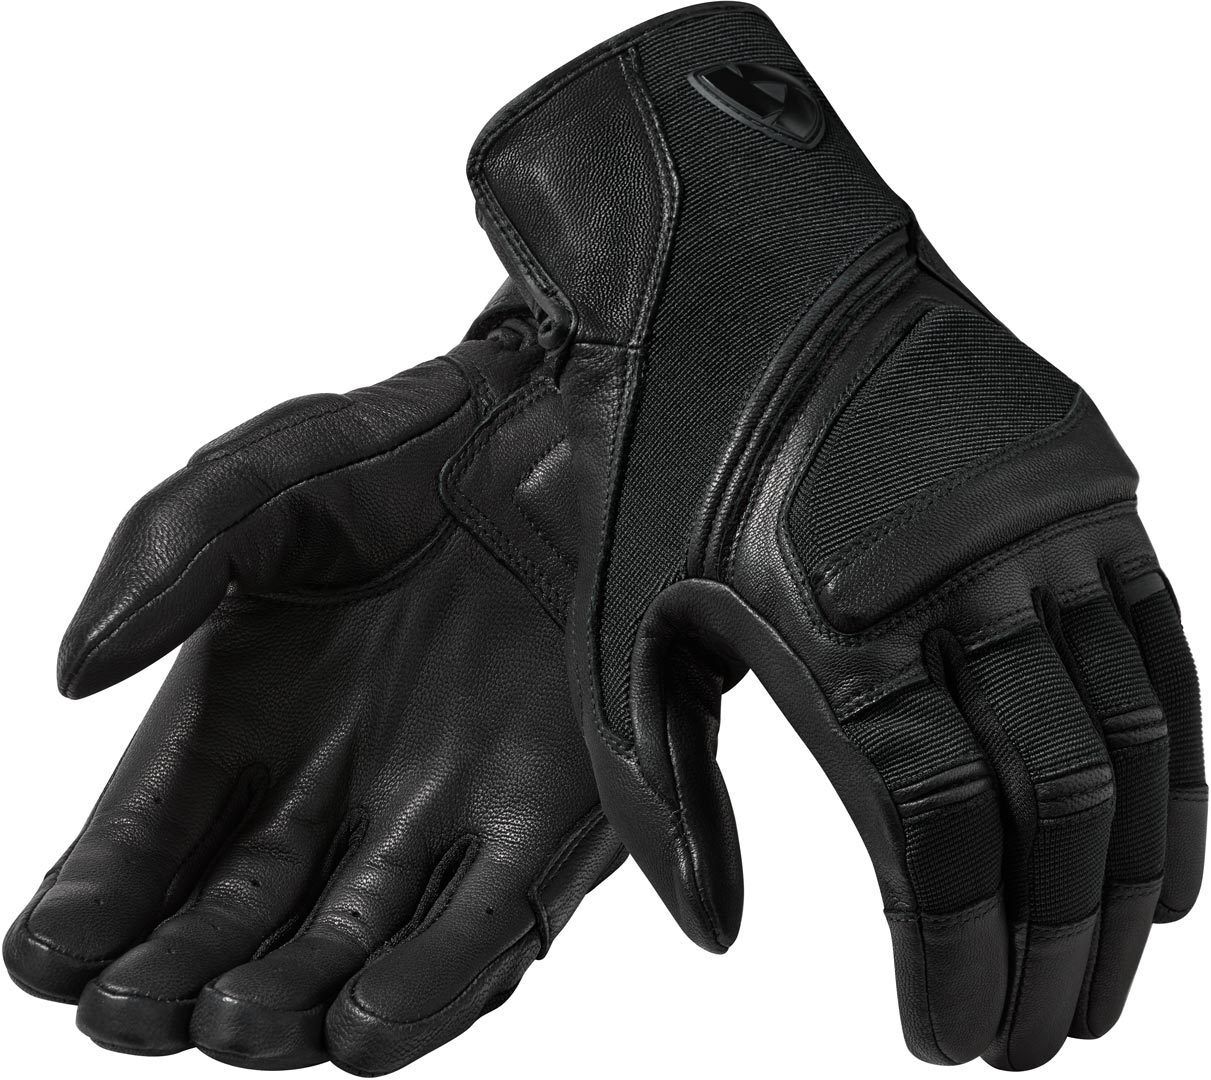 Revit Pandora Motorcycle Gloves  - Black